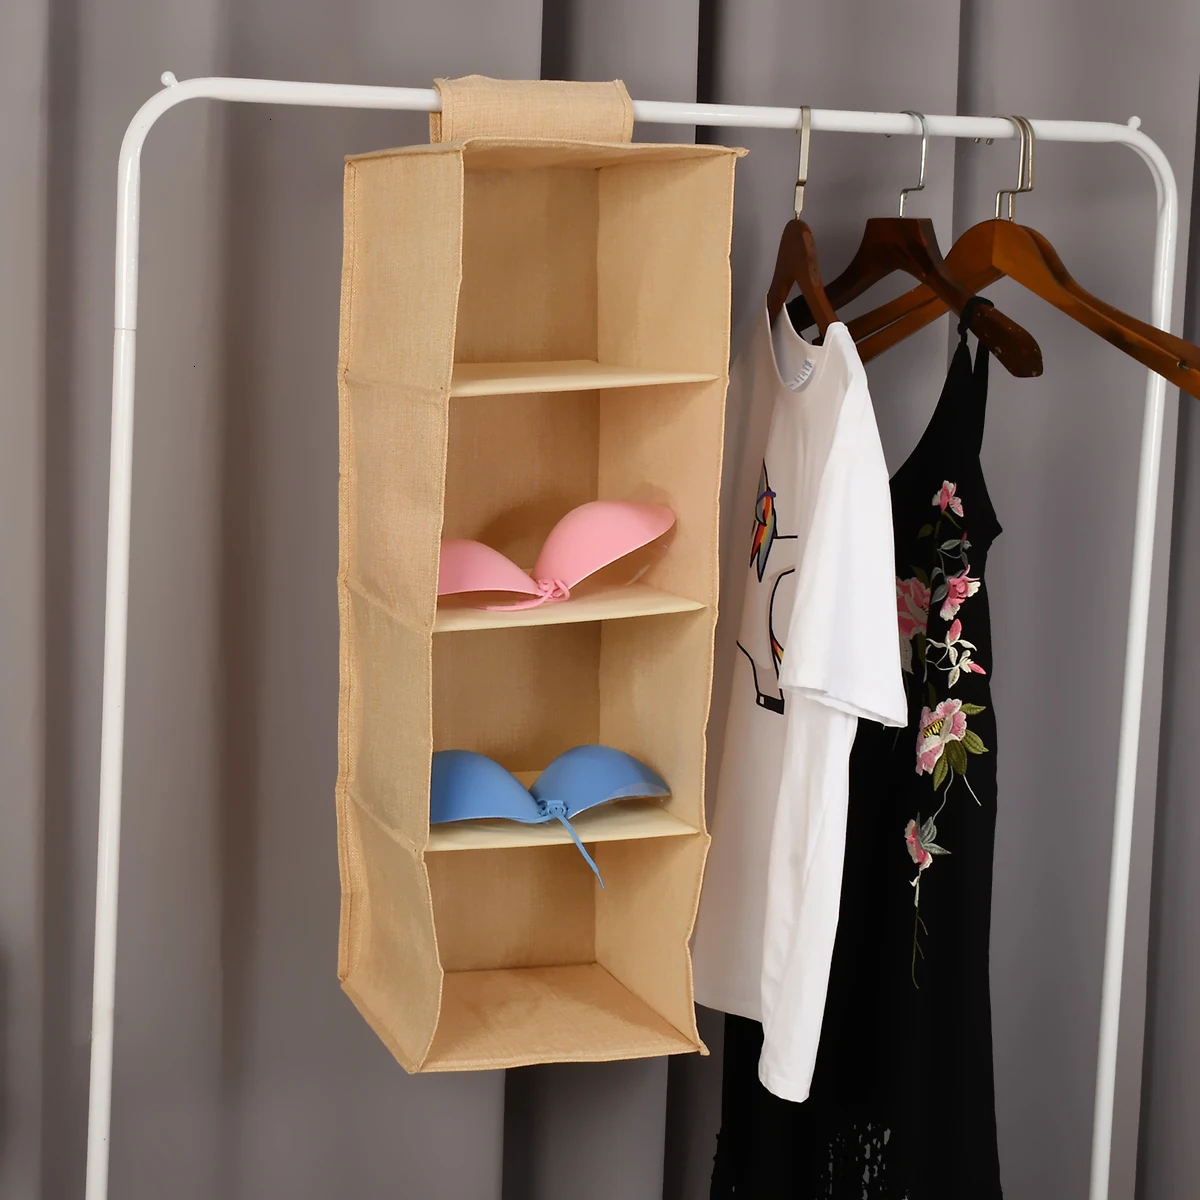 Подвесной шкаф для хранения, настенный ящик, сумка из хлопка для хранения одежды и льняной шкаф, бежевый и серый органайзер, коробки